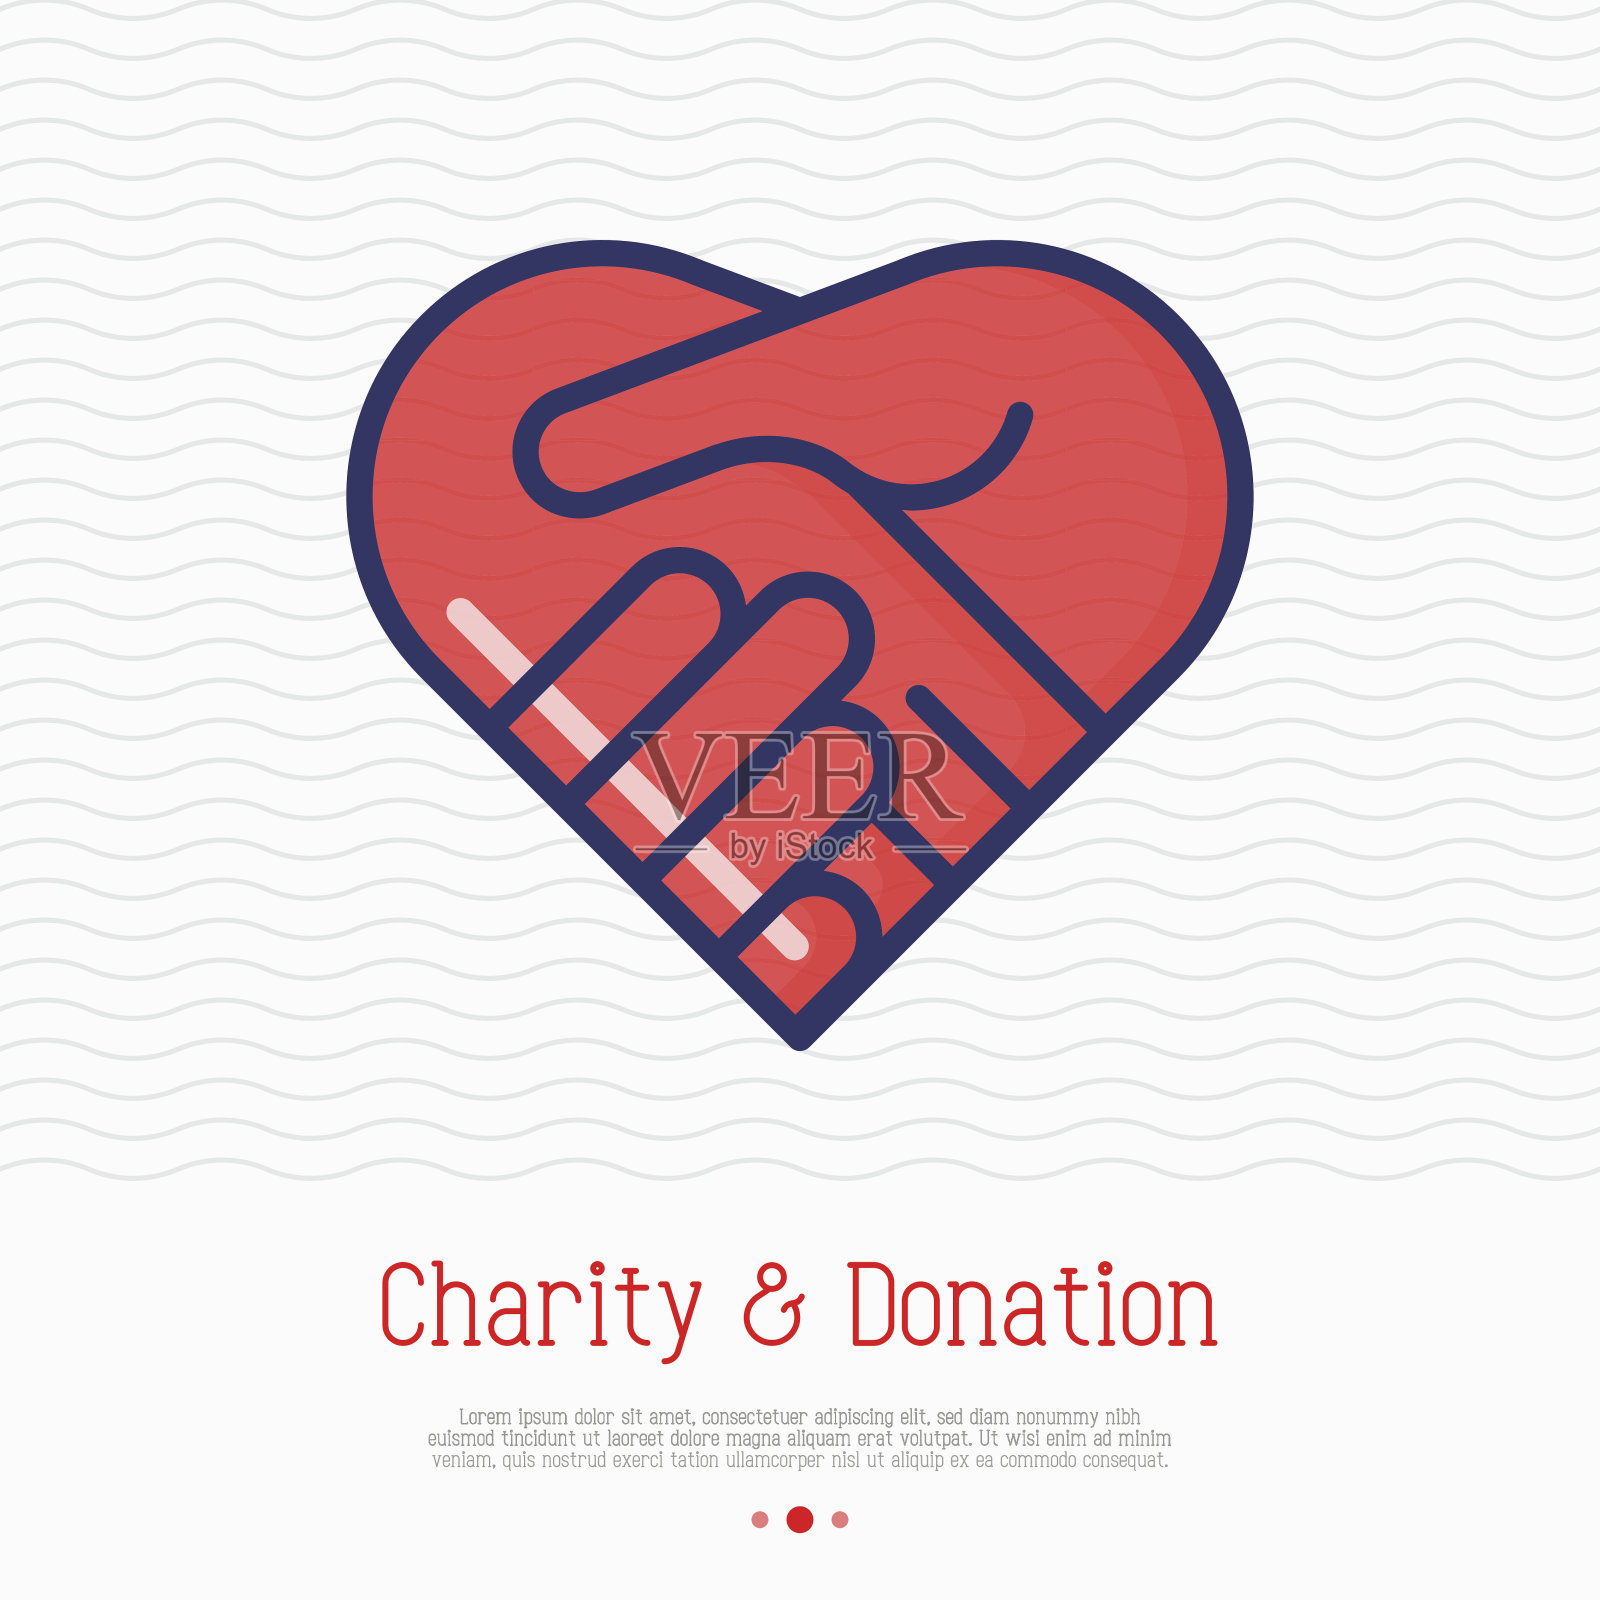 双手呈心形细线状的图标。握手，象征善意、捐赠和慈善。矢量插图。设计元素图片